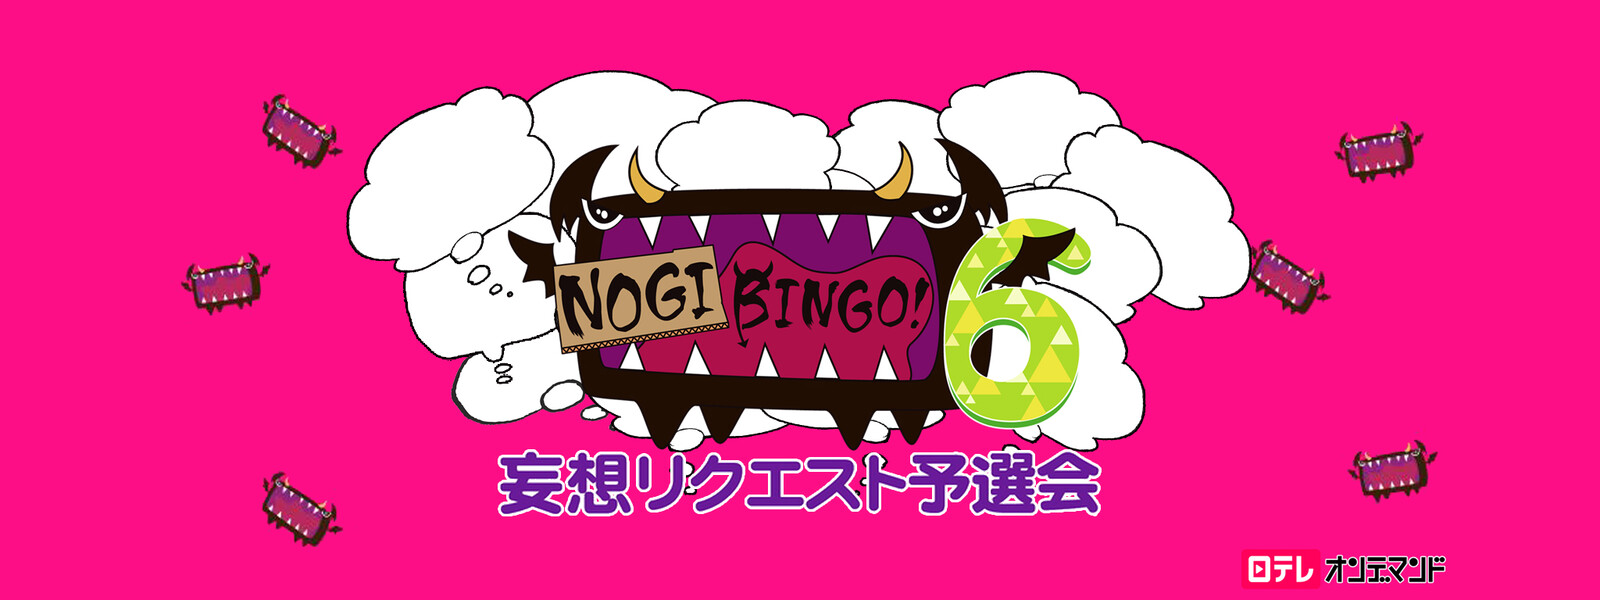 NOGIBINGO! 6 妄想リクエスト予選会の動画 - NOGIBINGO! 7